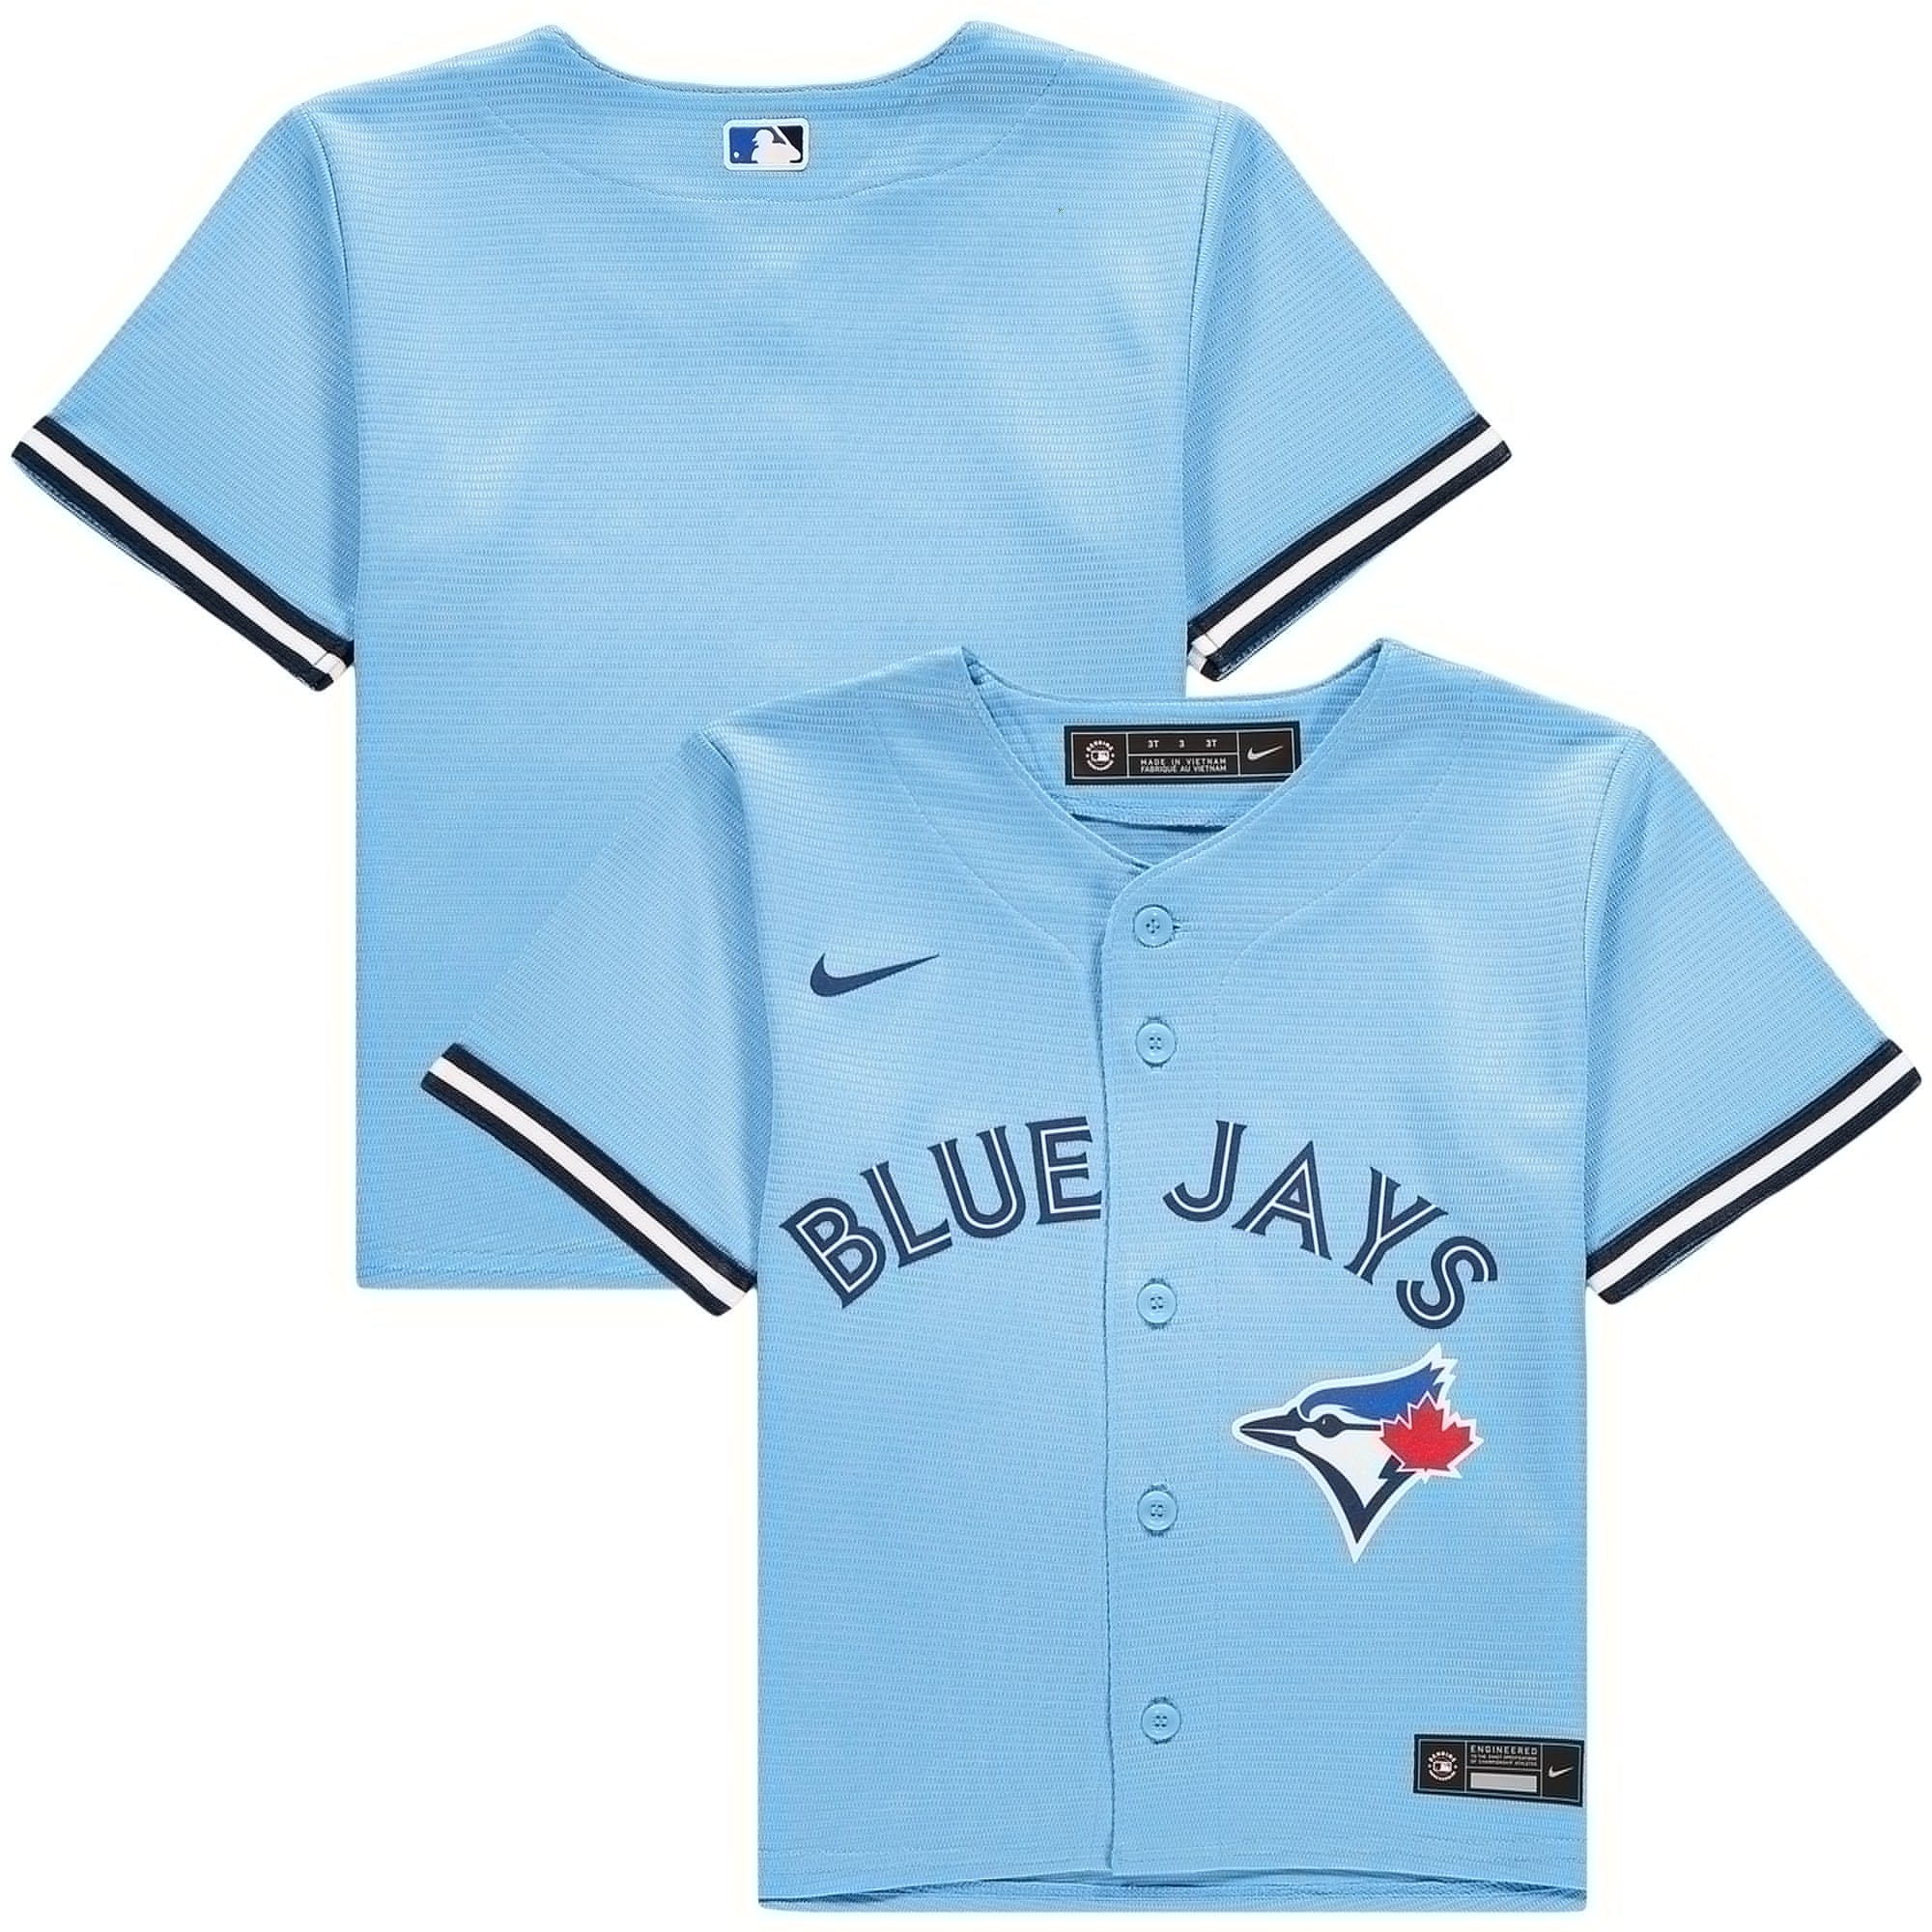 Toronto Blue Jays Jersey - Toronto Blue Jays MLB Jerseys